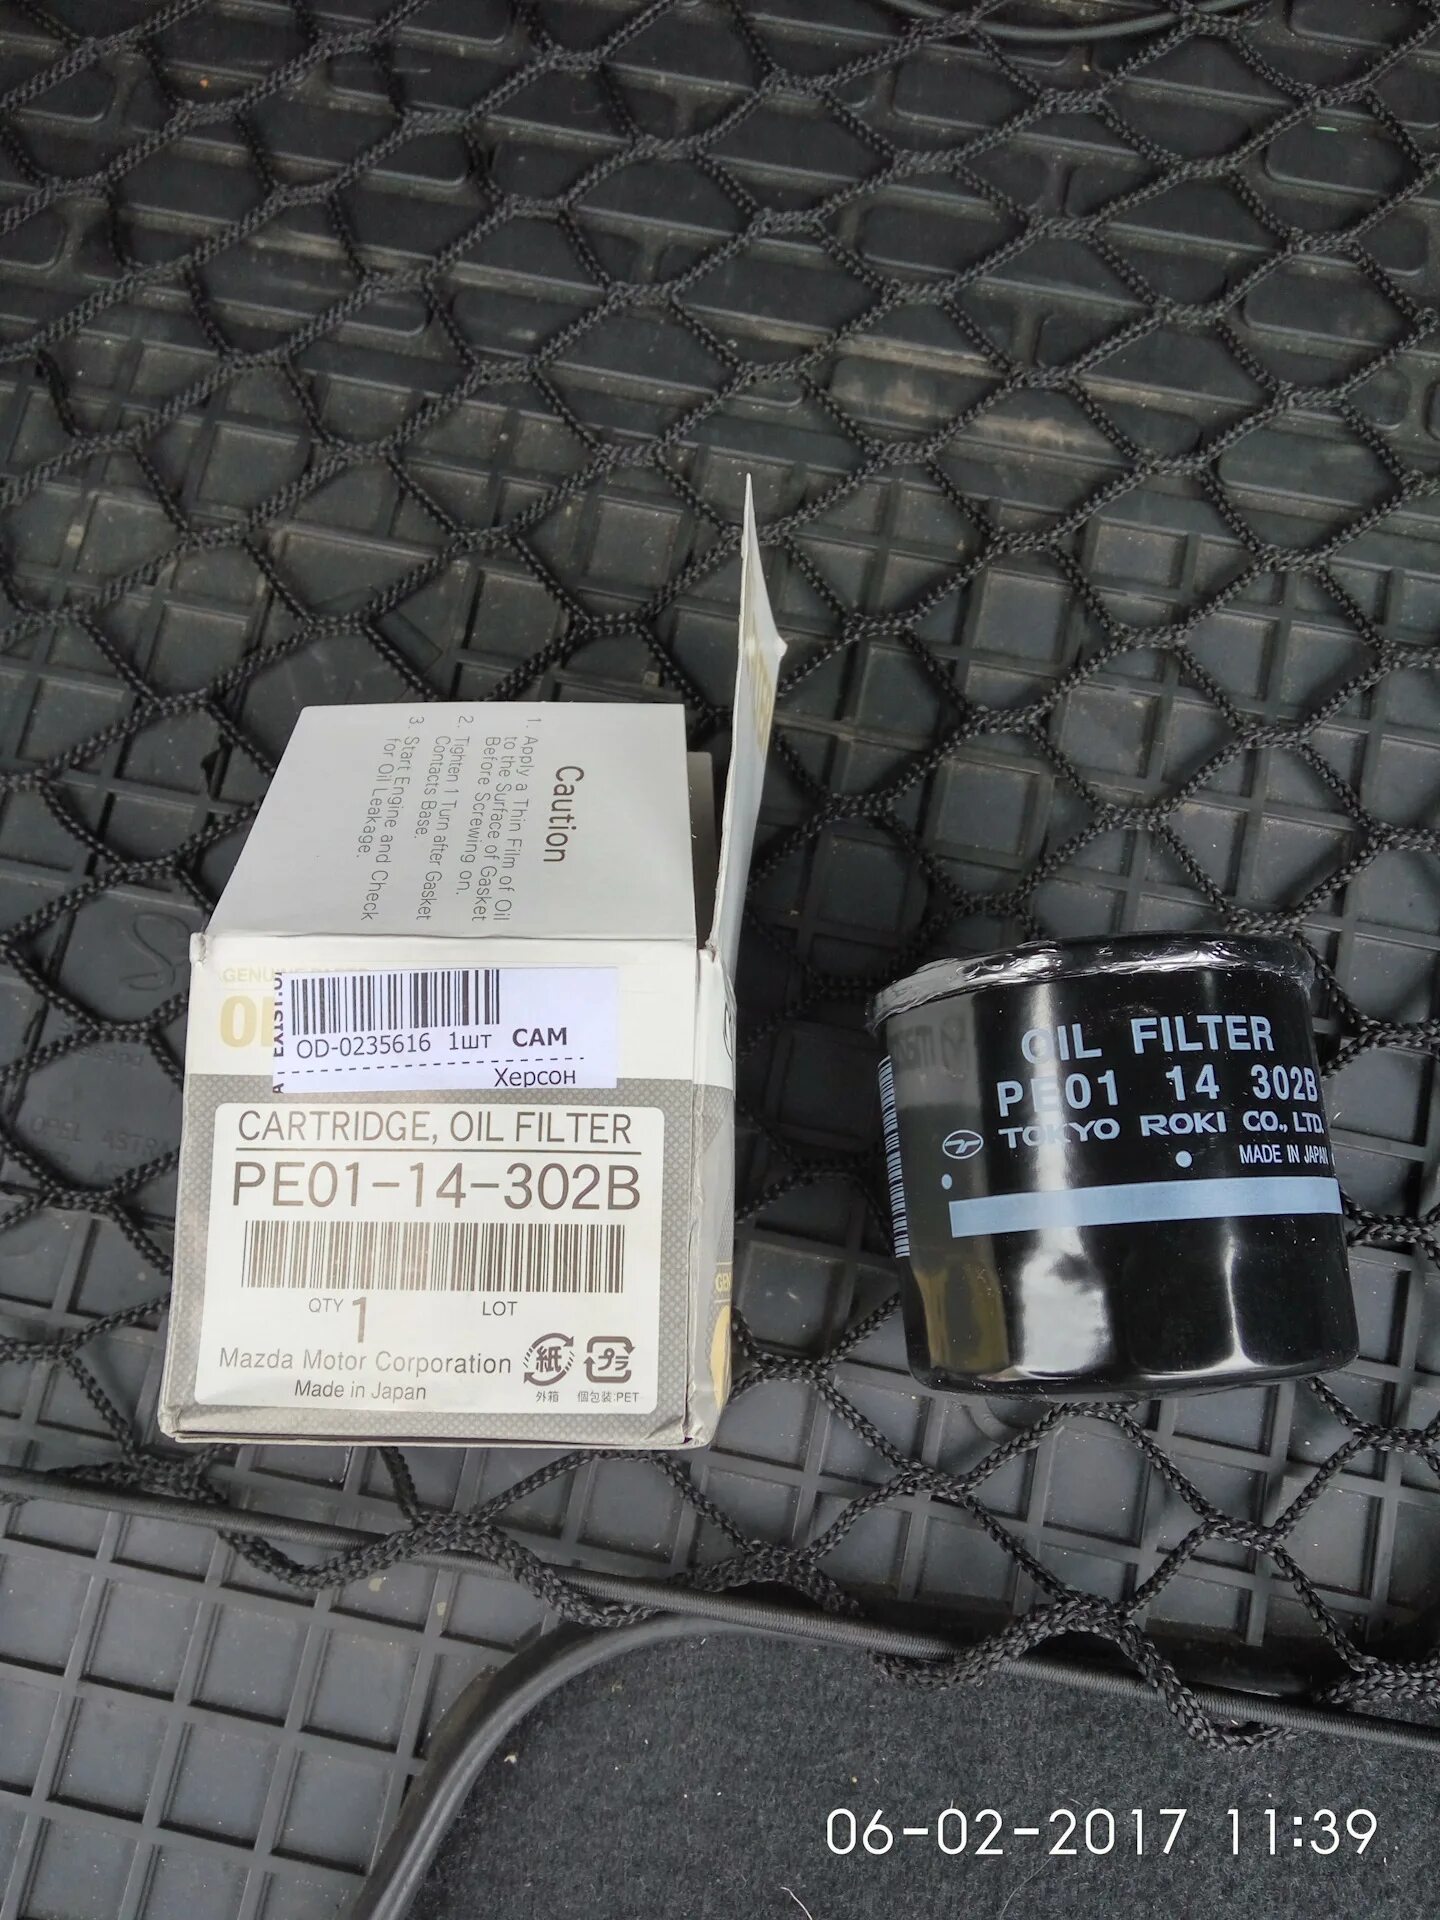 Фильтры для сх 5. Фильтр масляный Mazda CX-5 оригинал. Масляный фильтр Мазда сх5 2.0. Фильтр масляный Мазда cx5. Оригинальный масляный фильтр Мазда сх5 2.0.